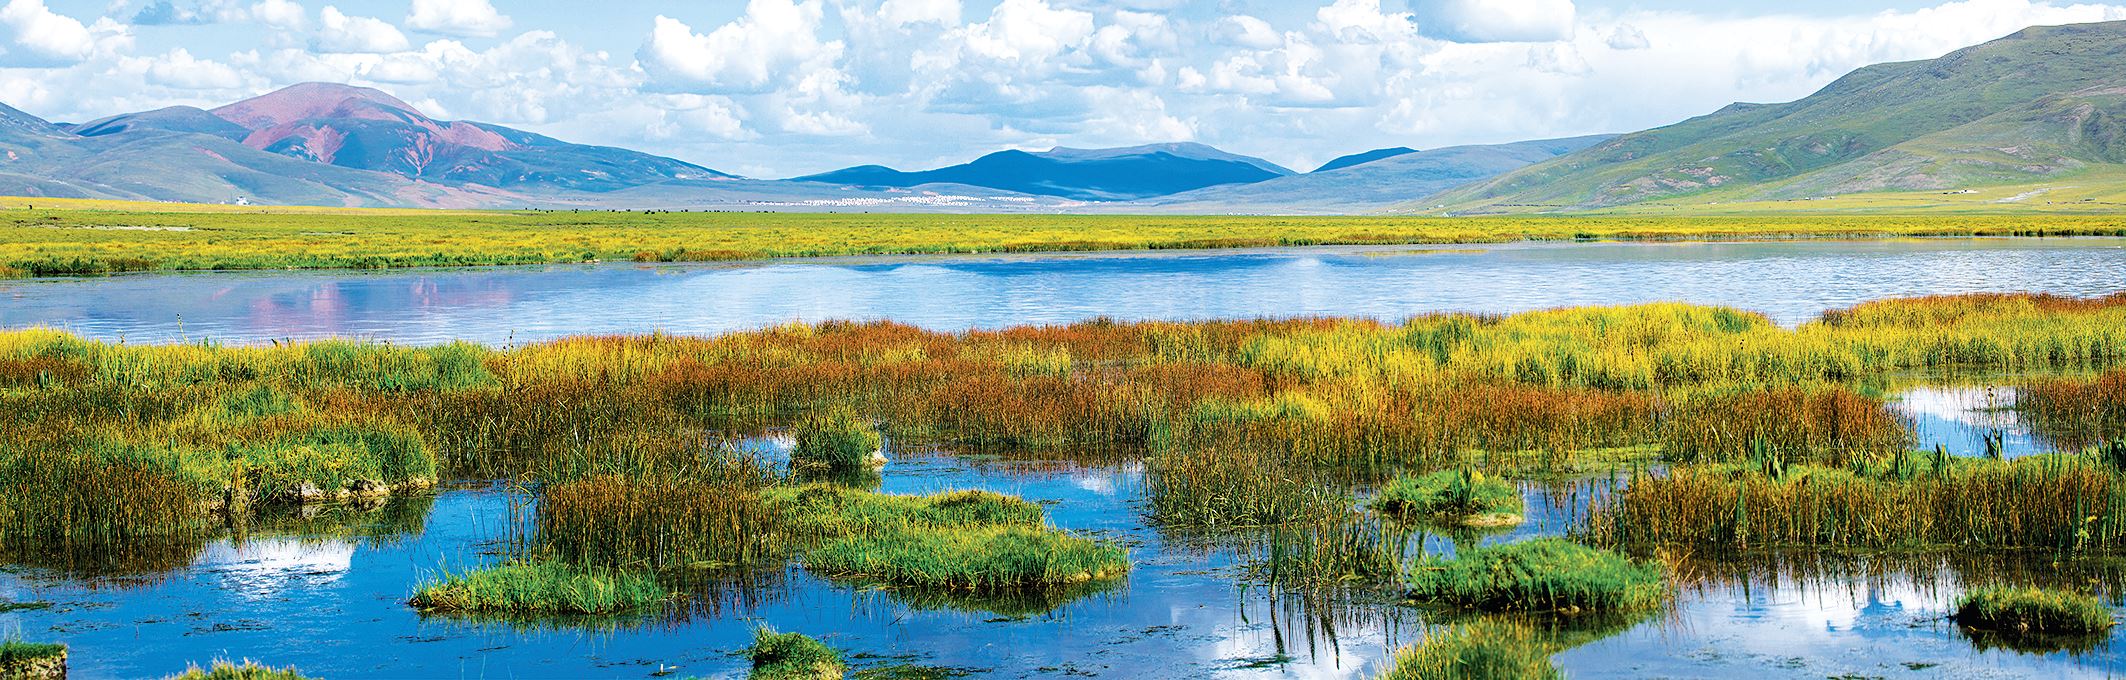 玉树隆宝滩被列入国际重要湿地名录